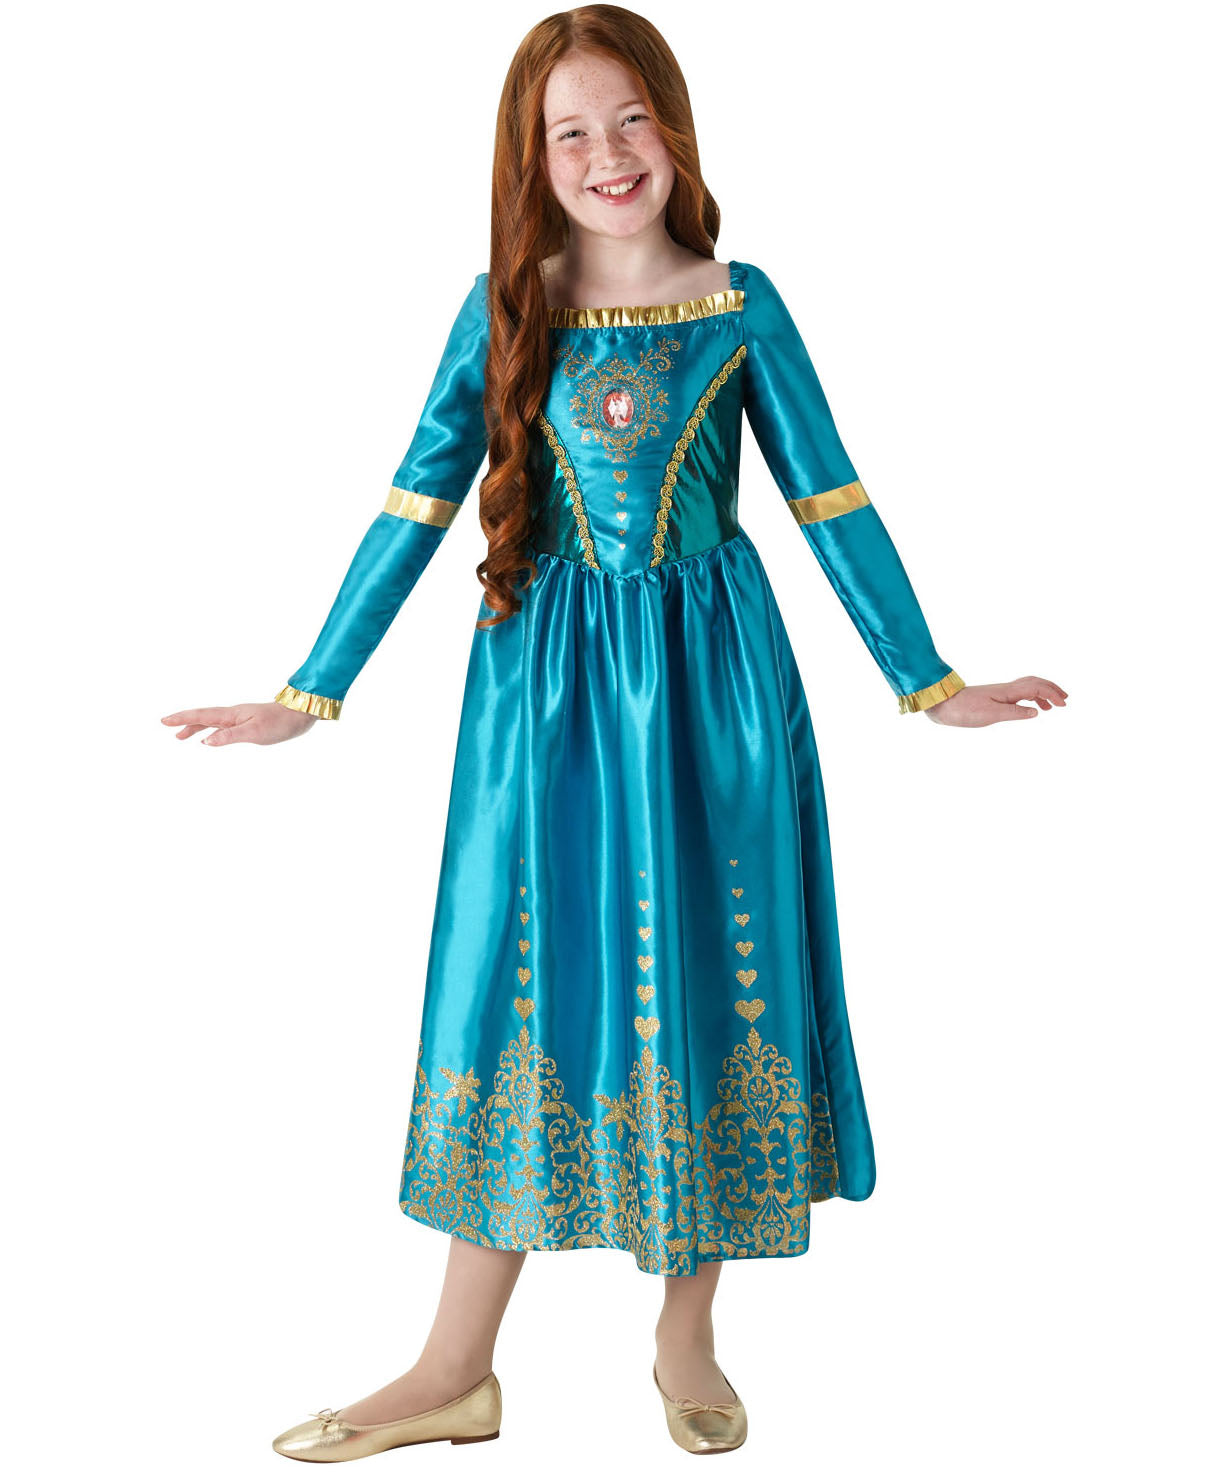 Gem Princess Merida Costume